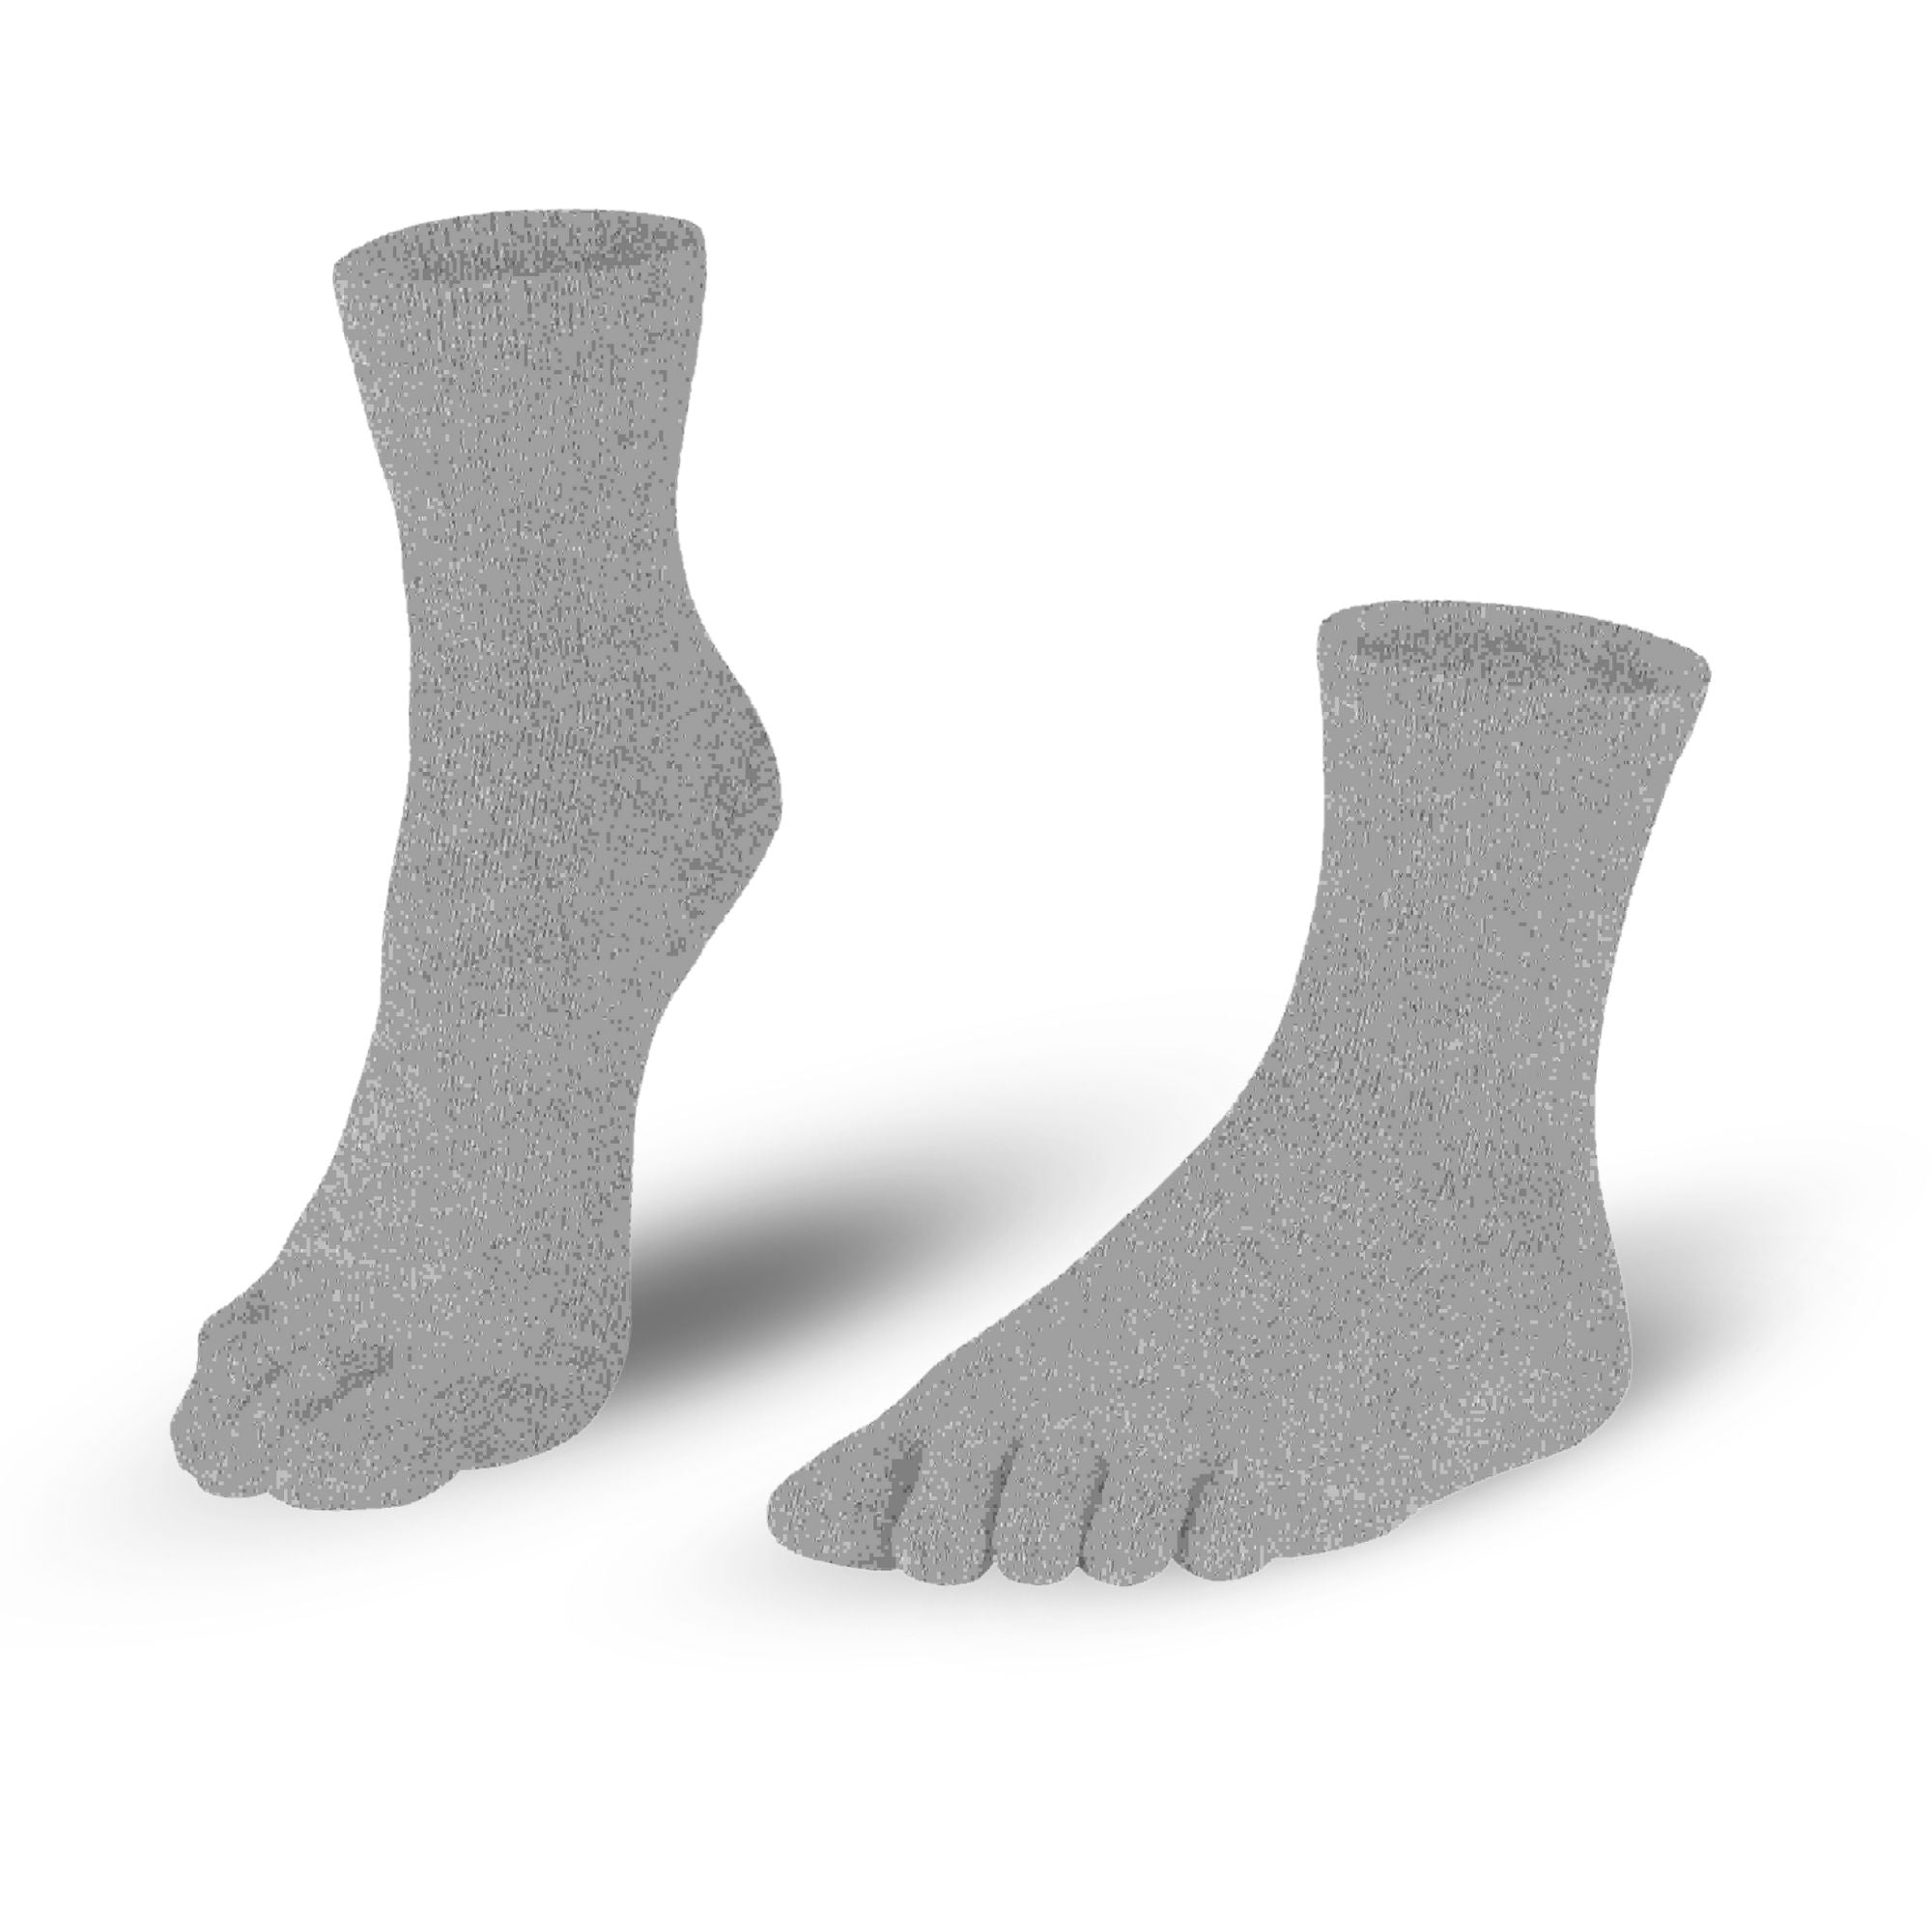 Calcetines de algodón en gris claro para señoras y caballeros